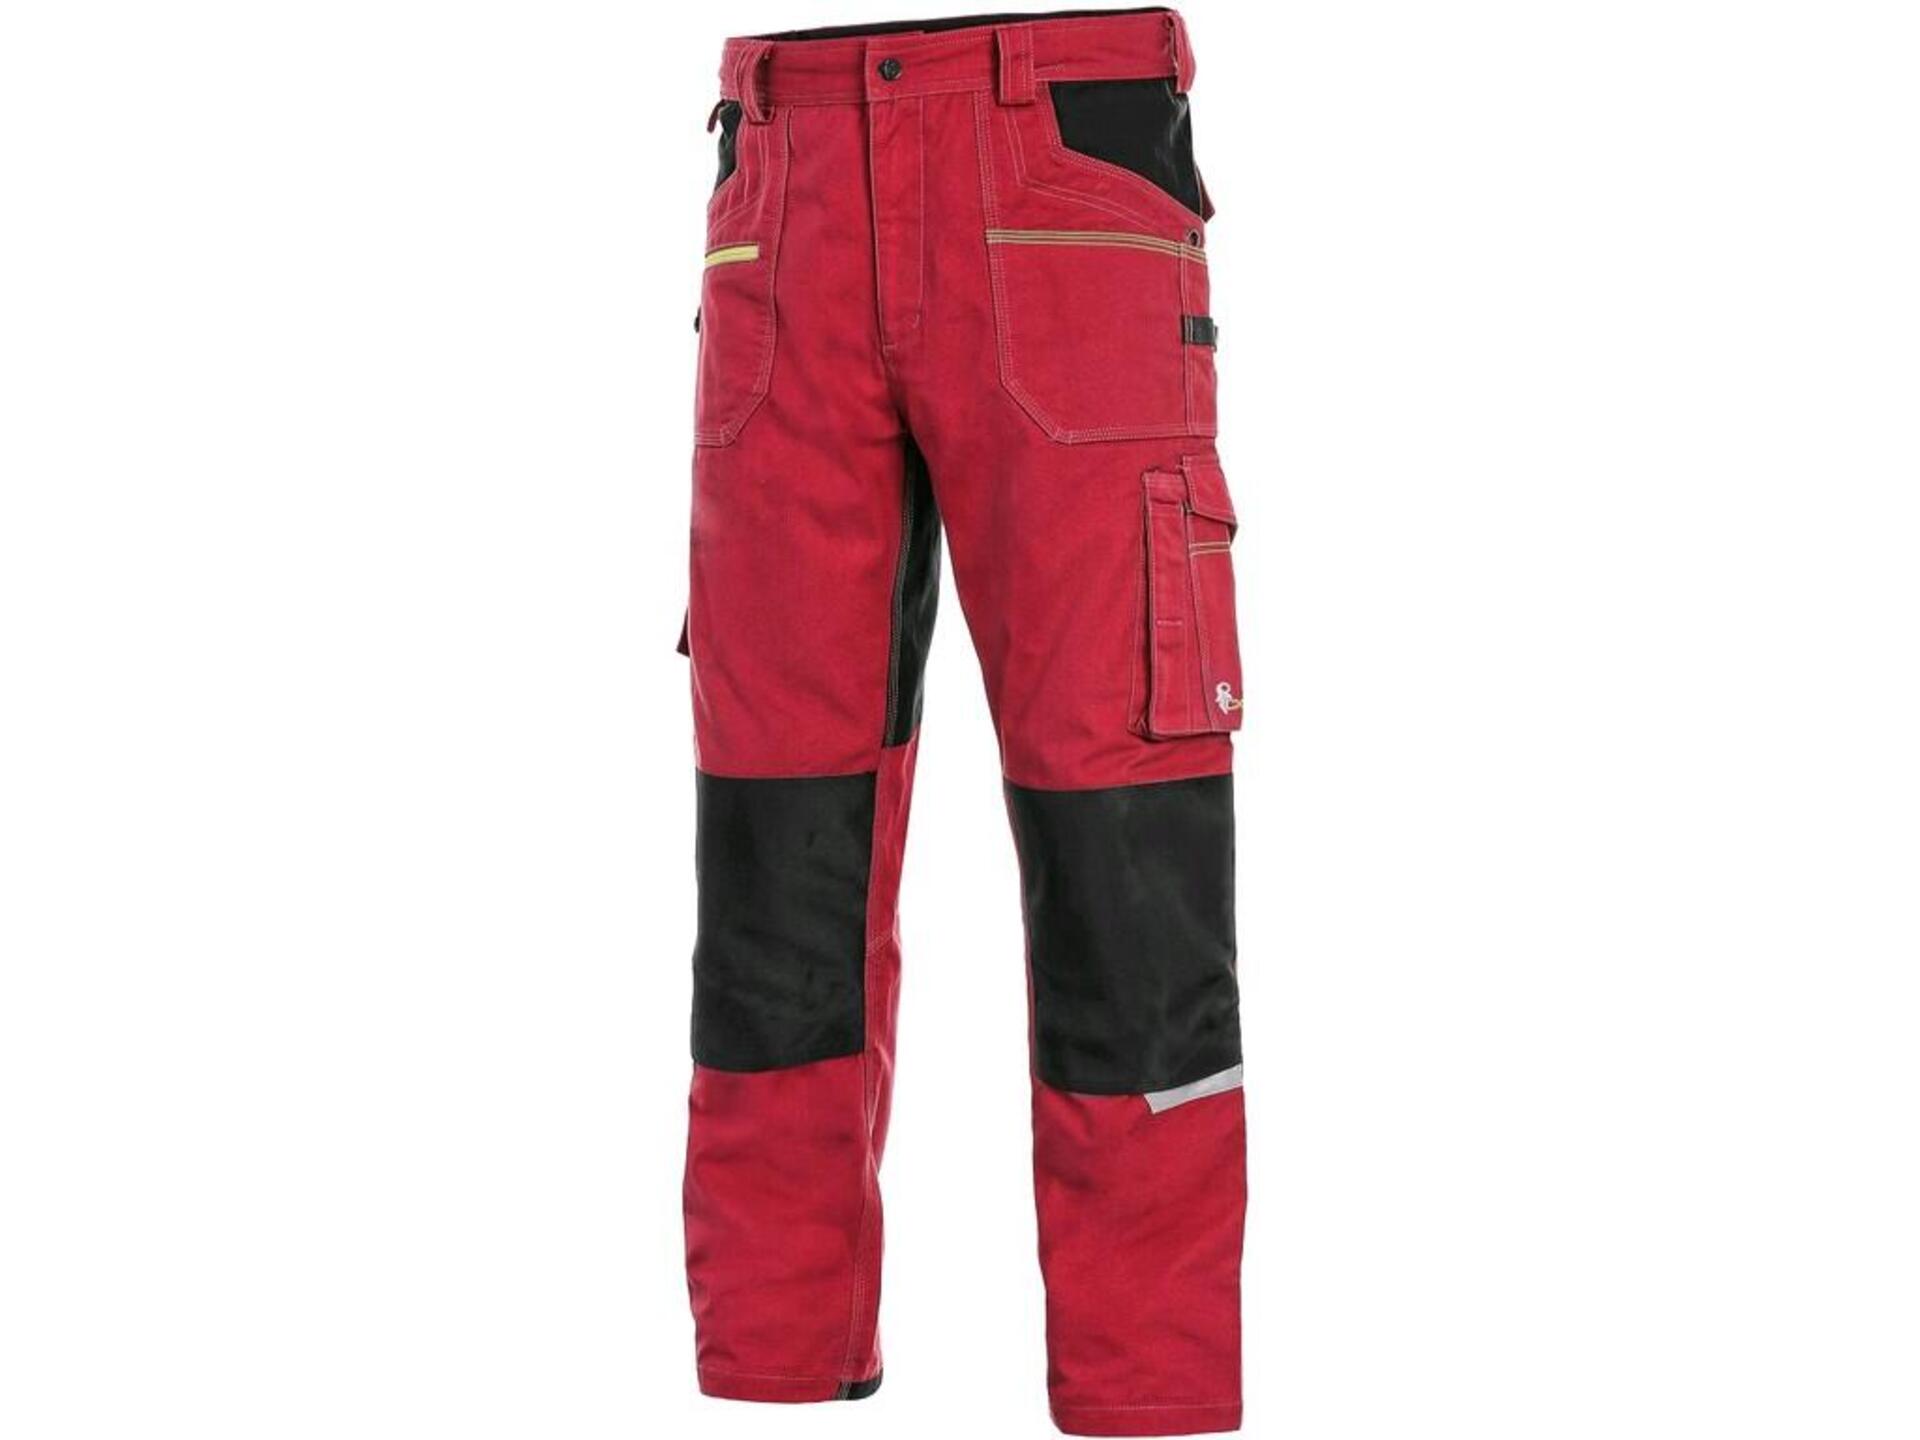 CXS STRETCH pánské Kalhoty pracovní do pasu červená/černá  46